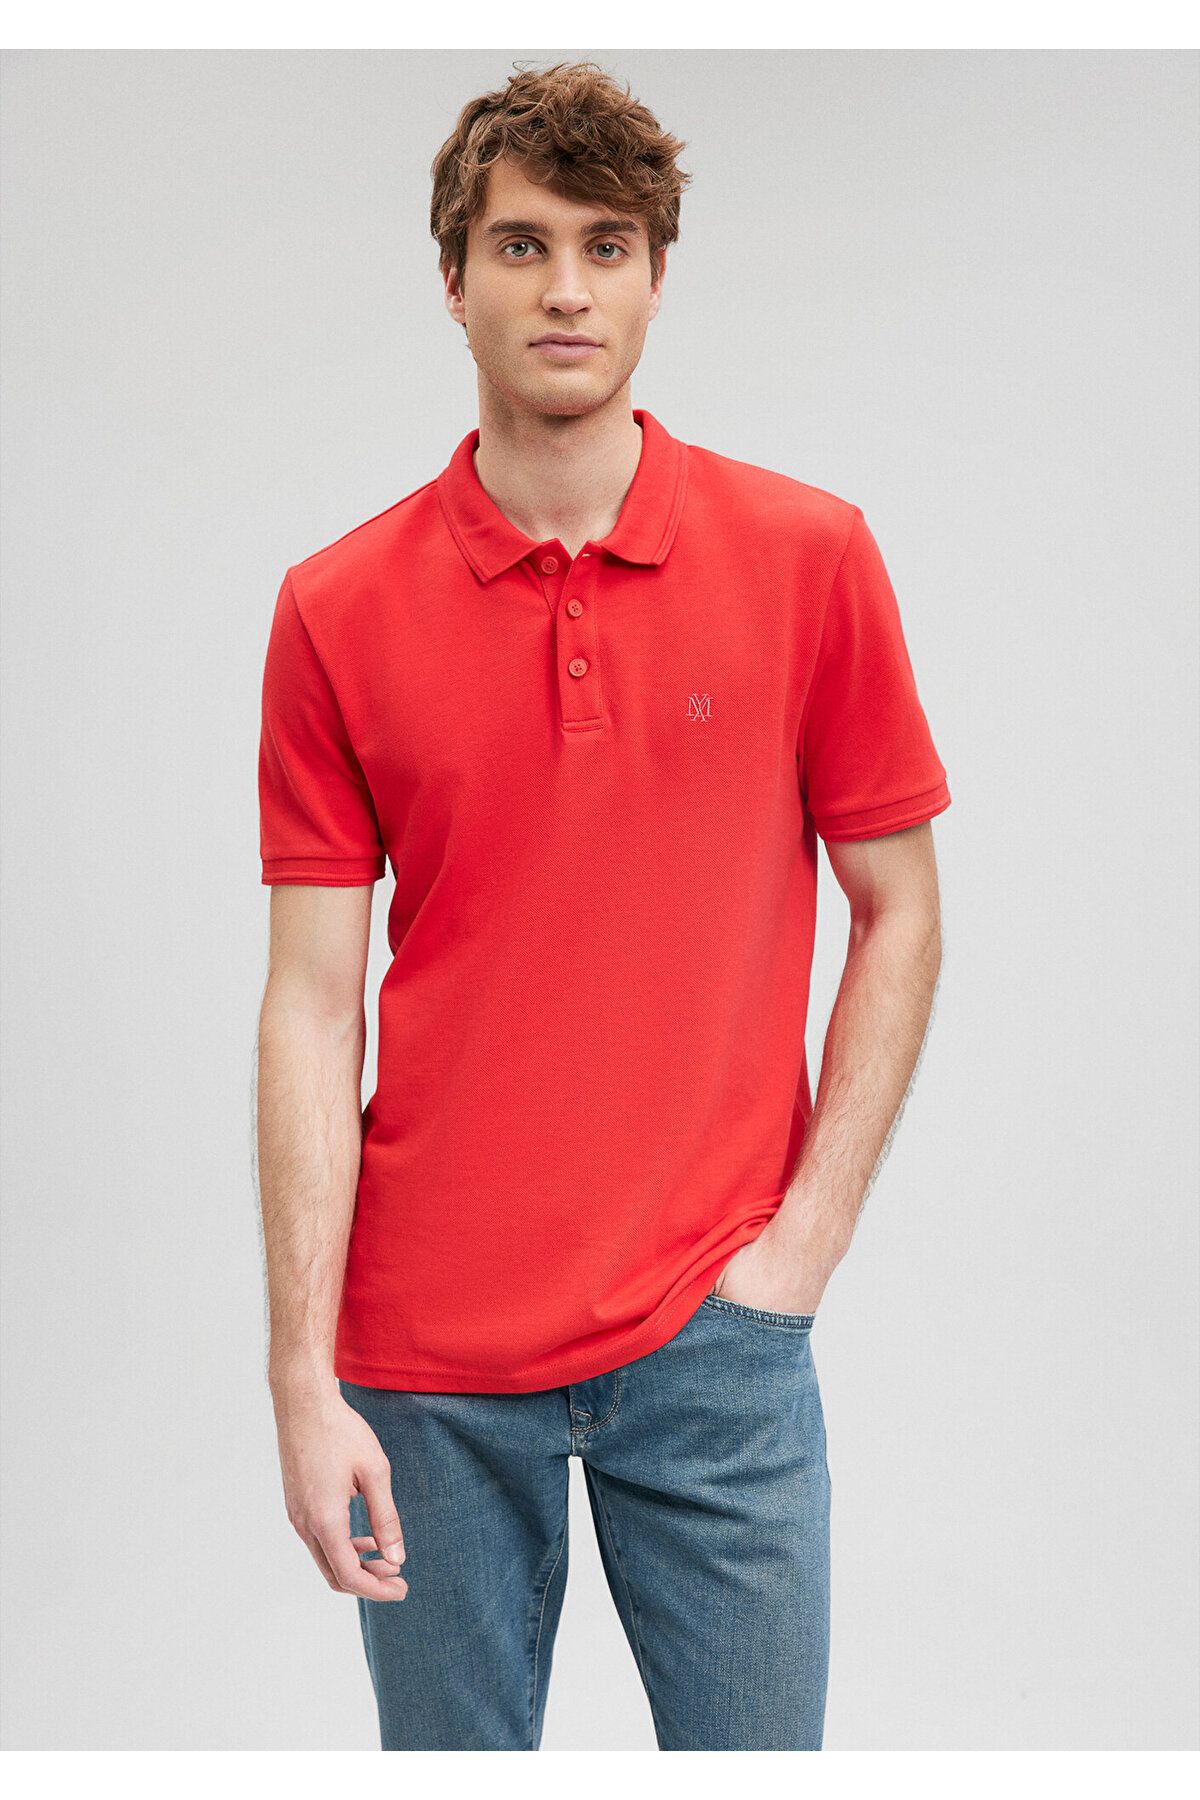 Mavi Kırmızı Polo Tişört Slim Fit / Dar Kesim 064946-70471